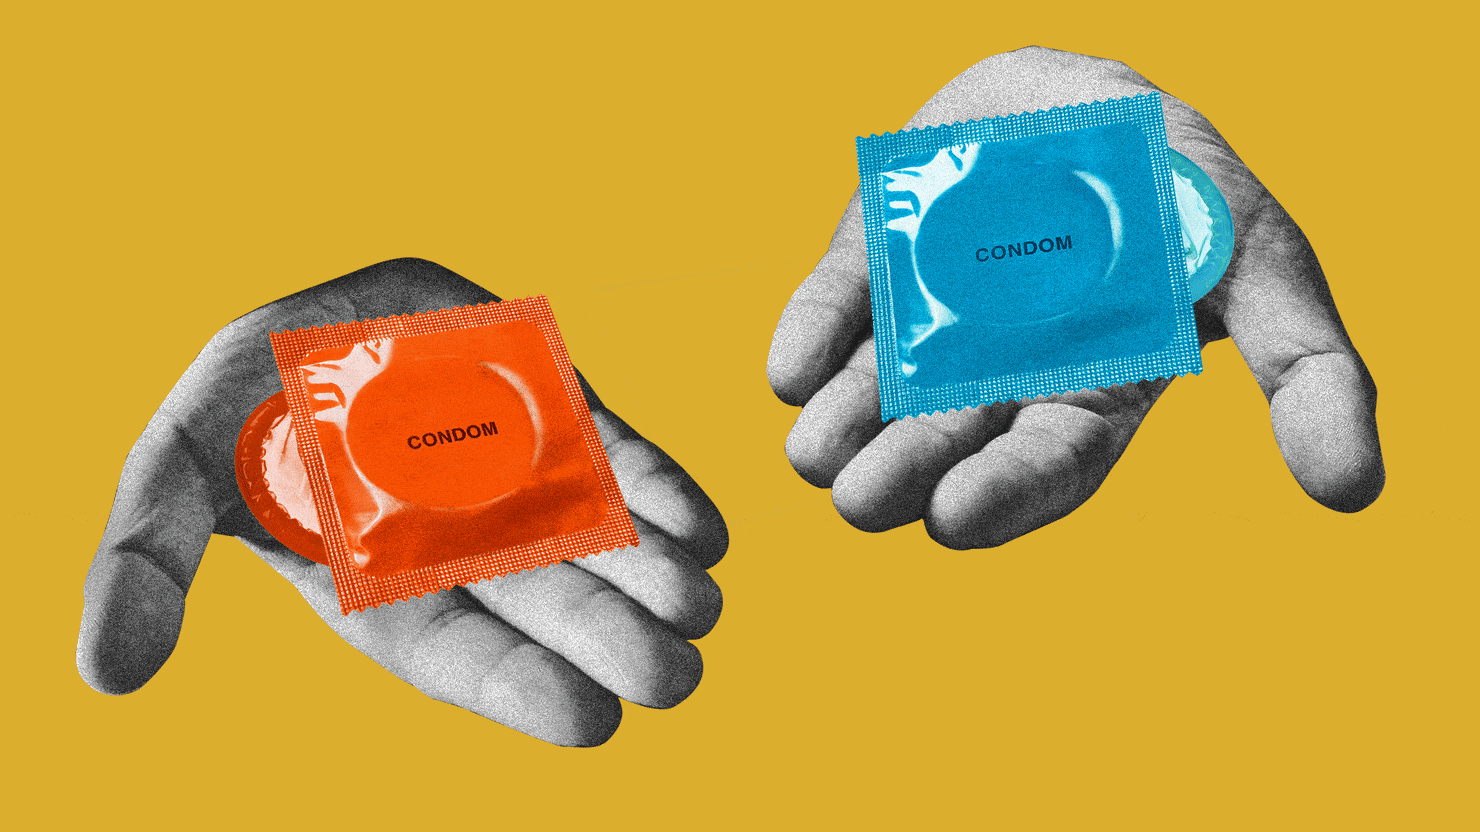 красный и синий презервативы